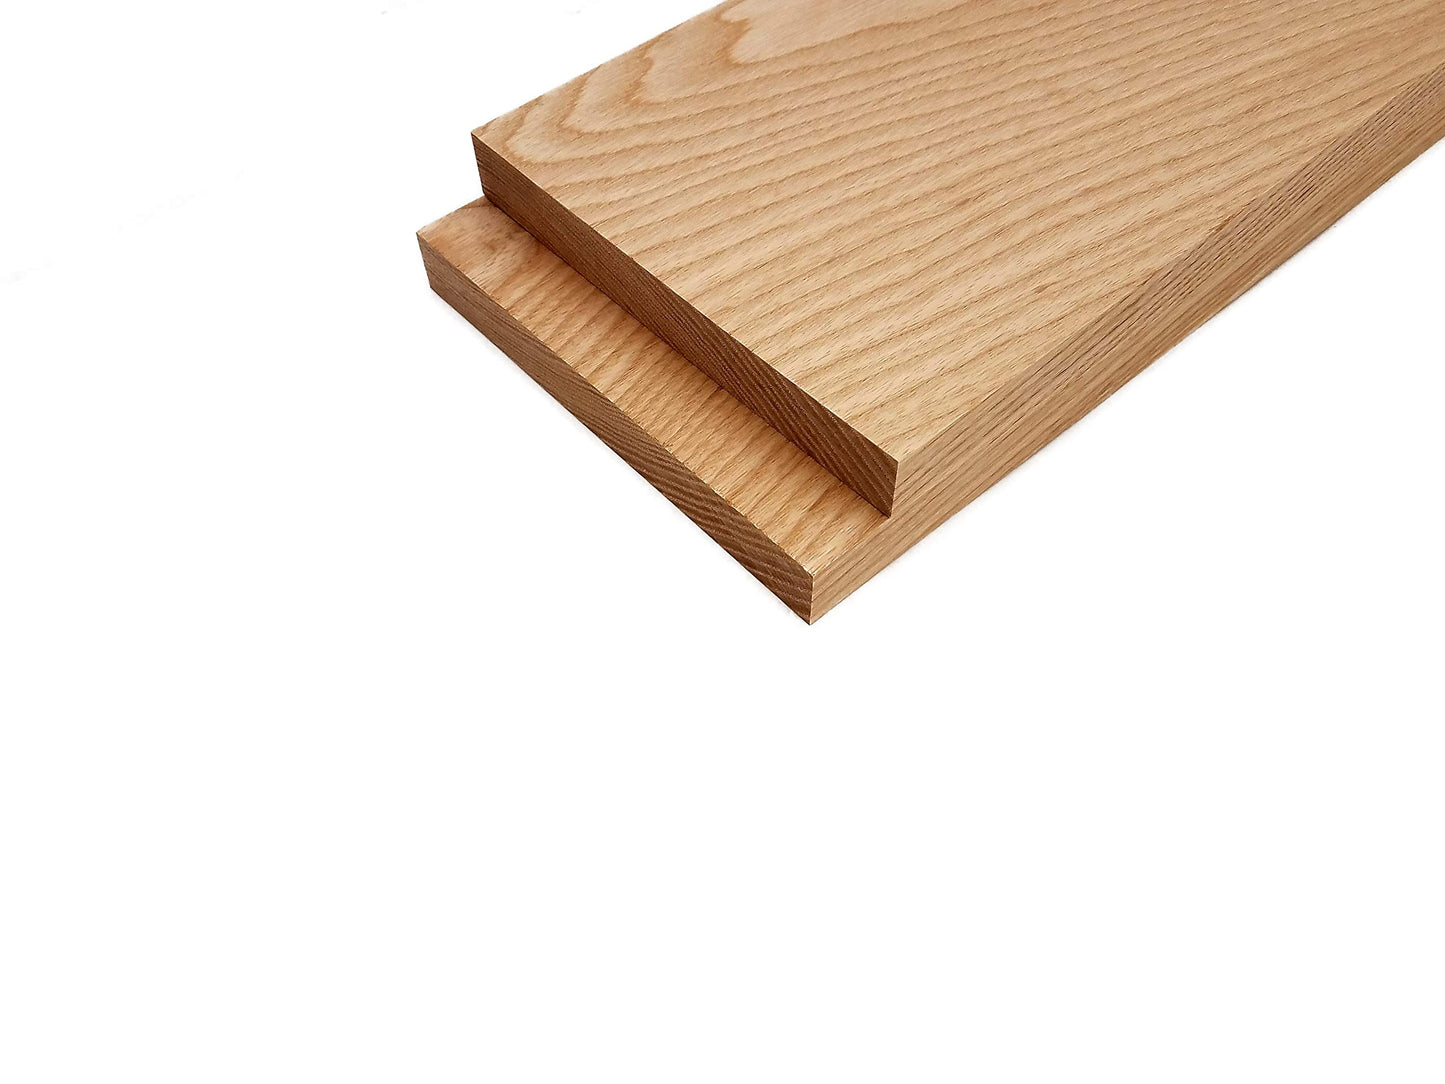 White Ash Lumber Board - 3/4" x 6" (2 Pcs) (3/4" x 6" x 48")